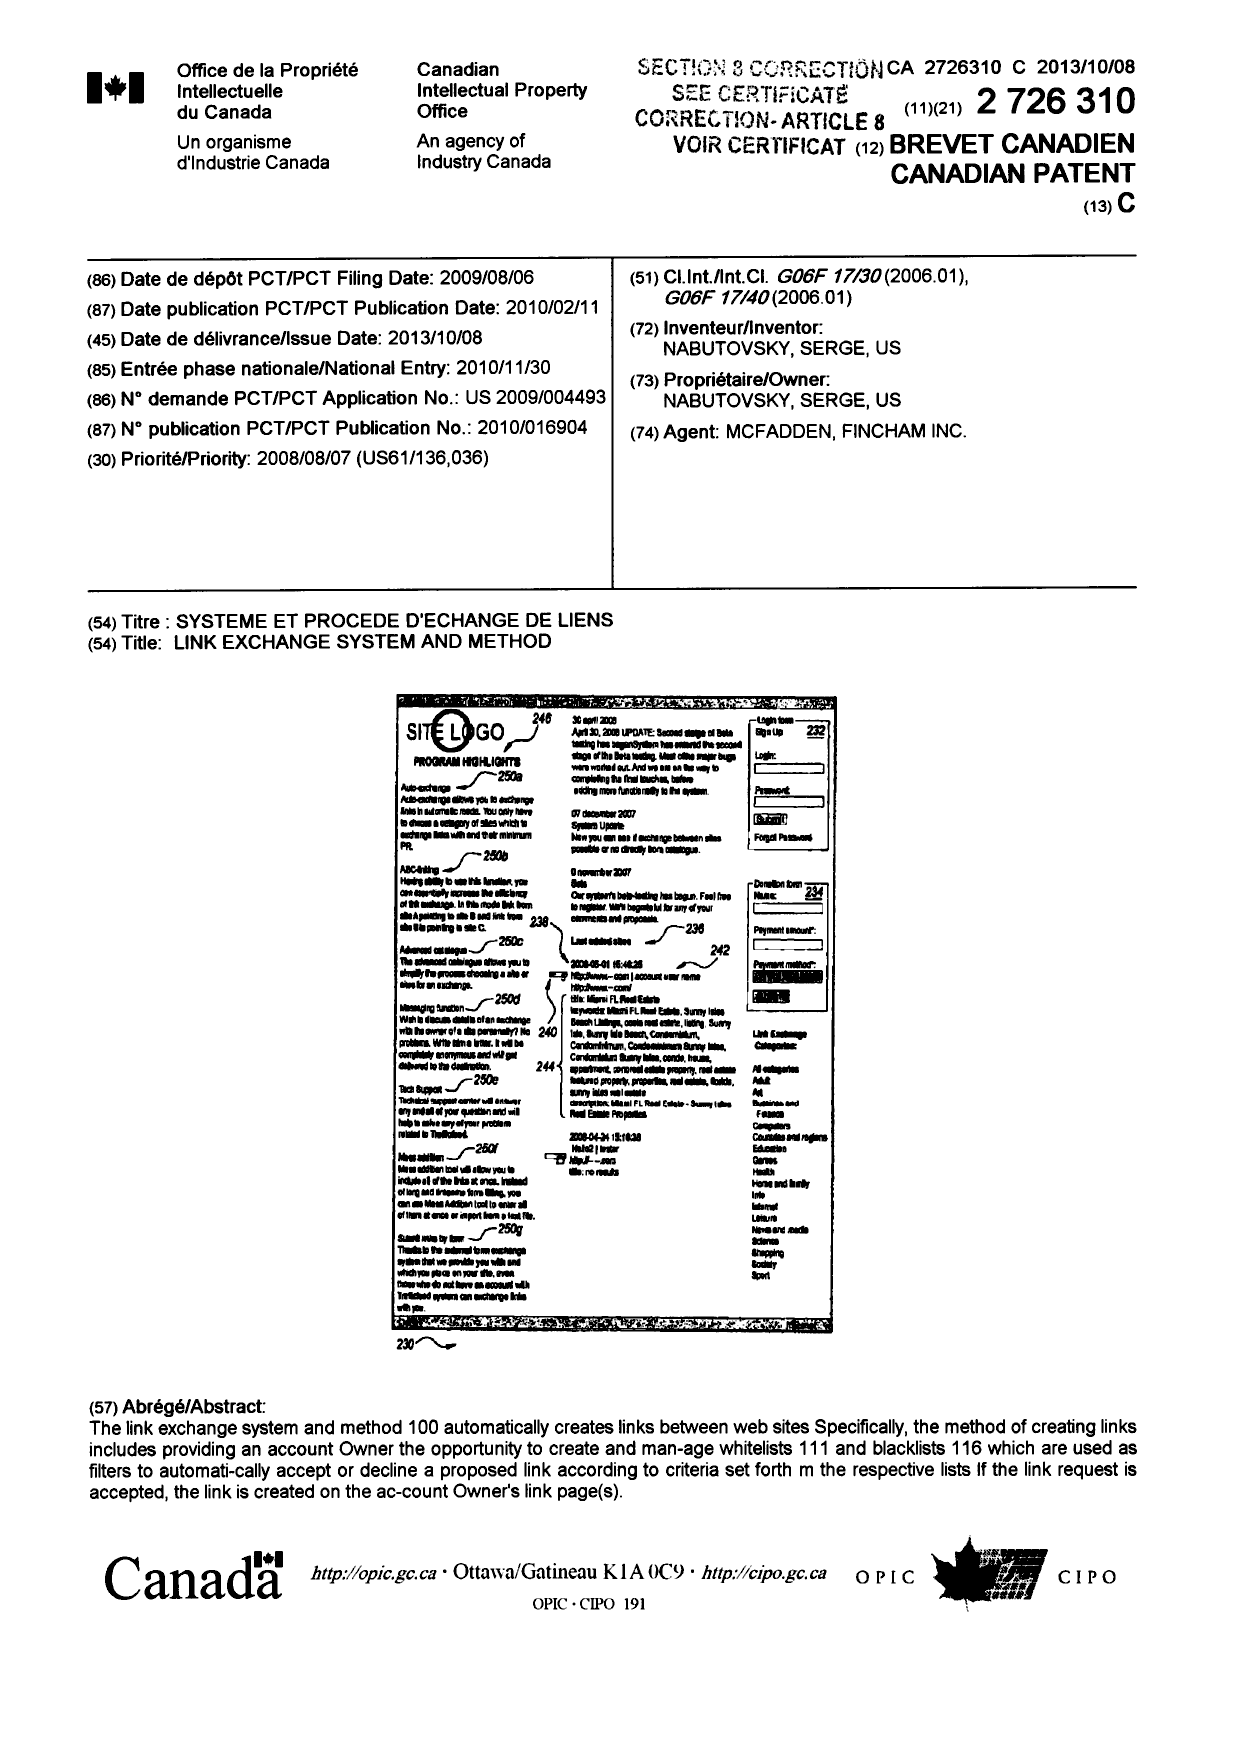 Document de brevet canadien 2726310. Page couverture 20131231. Image 1 de 2